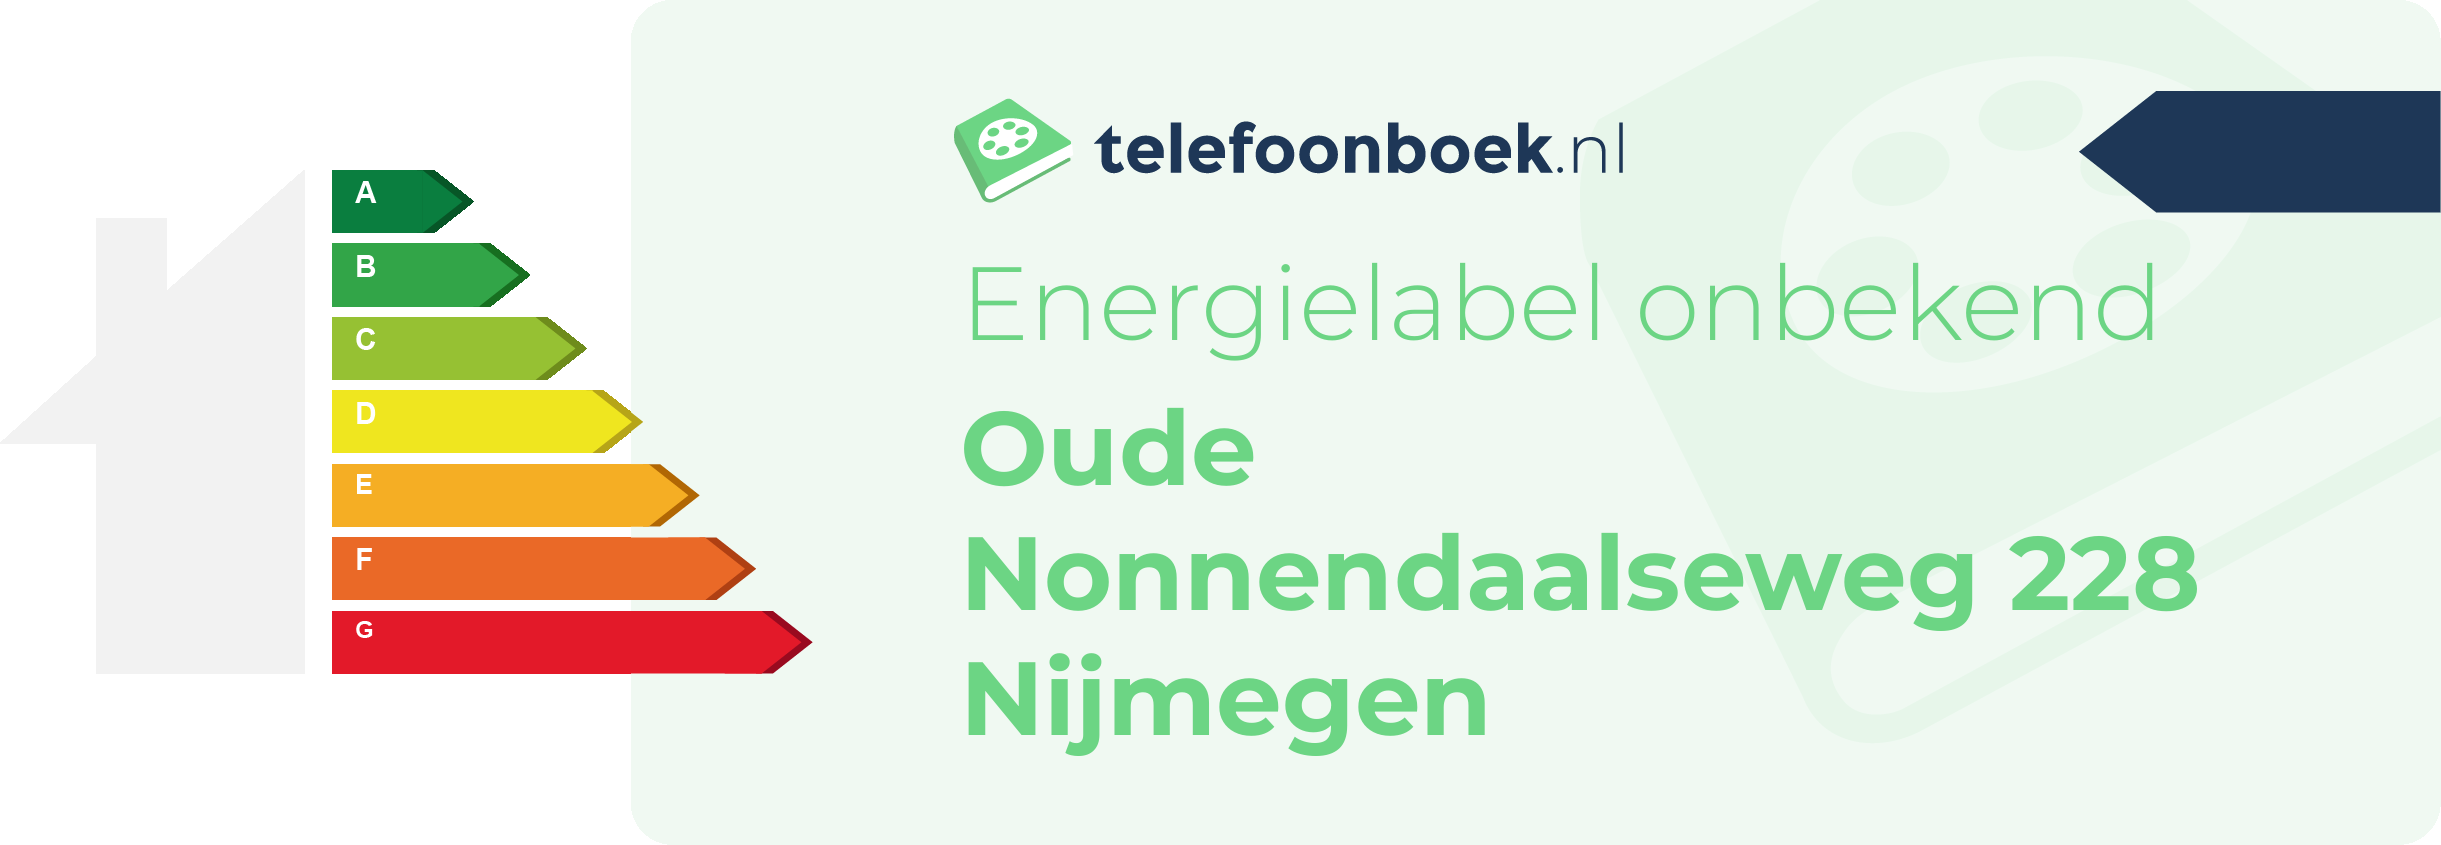 Energielabel Oude Nonnendaalseweg 228 Nijmegen